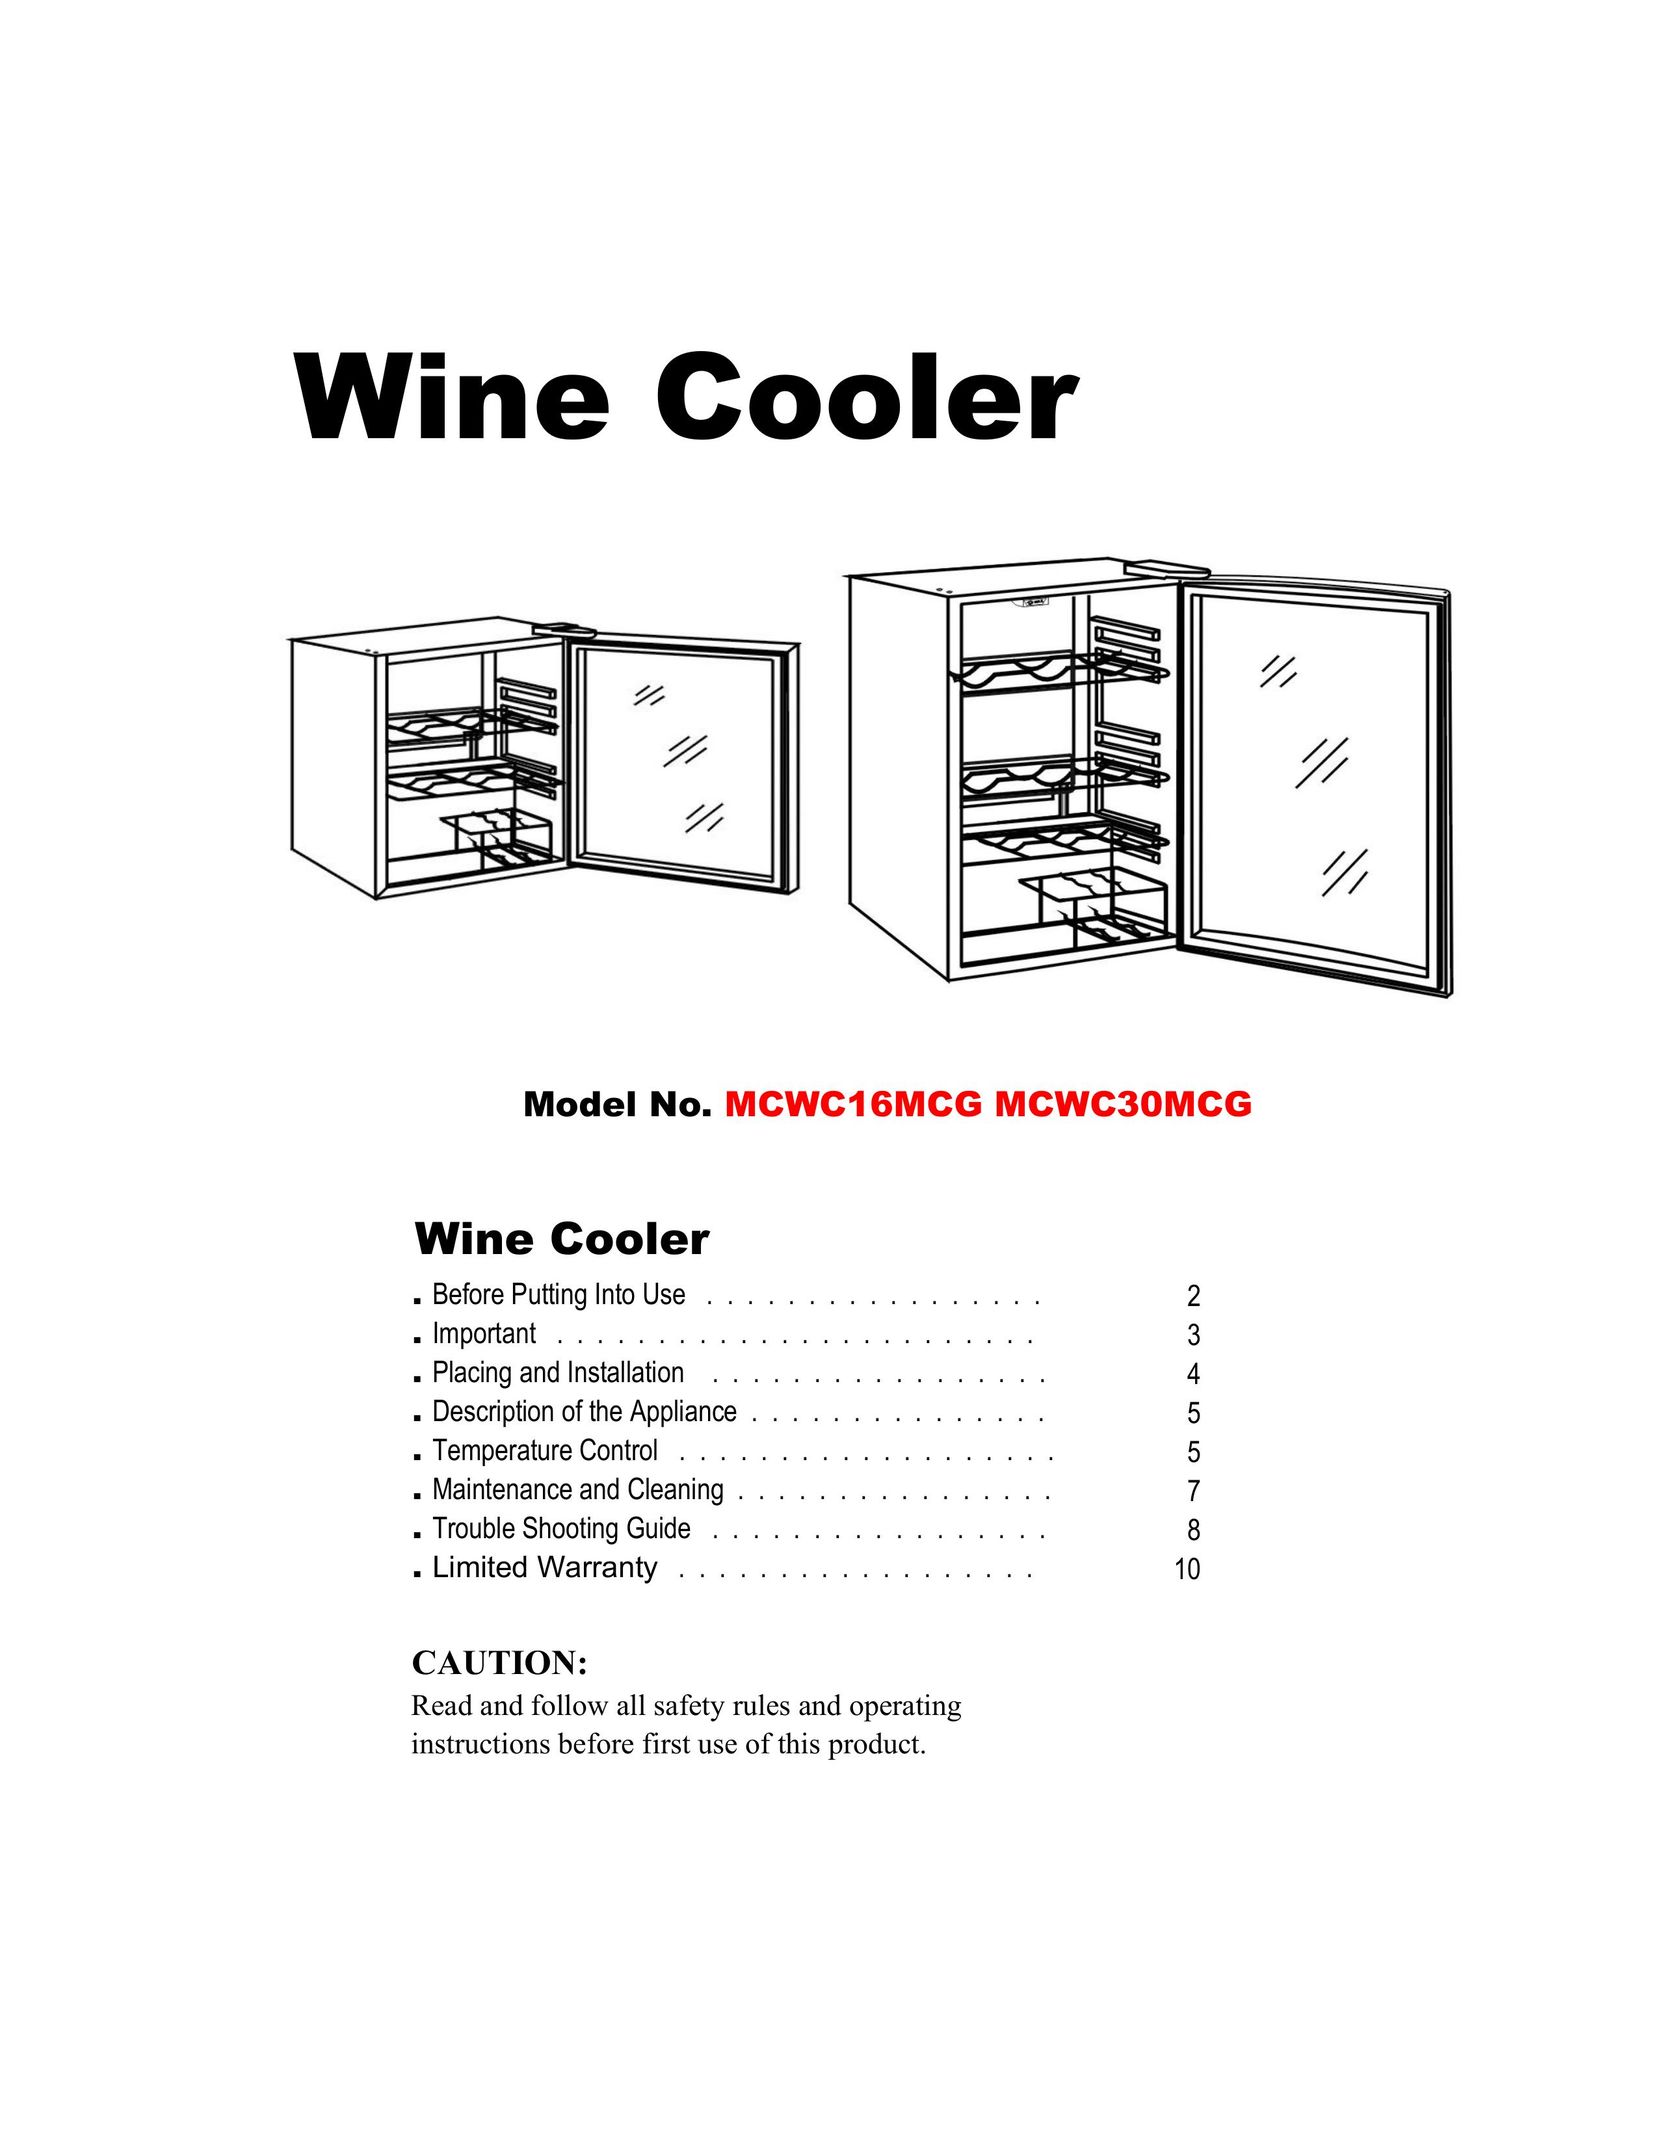 Magic Chef MCWC30MCG Beverage Dispenser User Manual